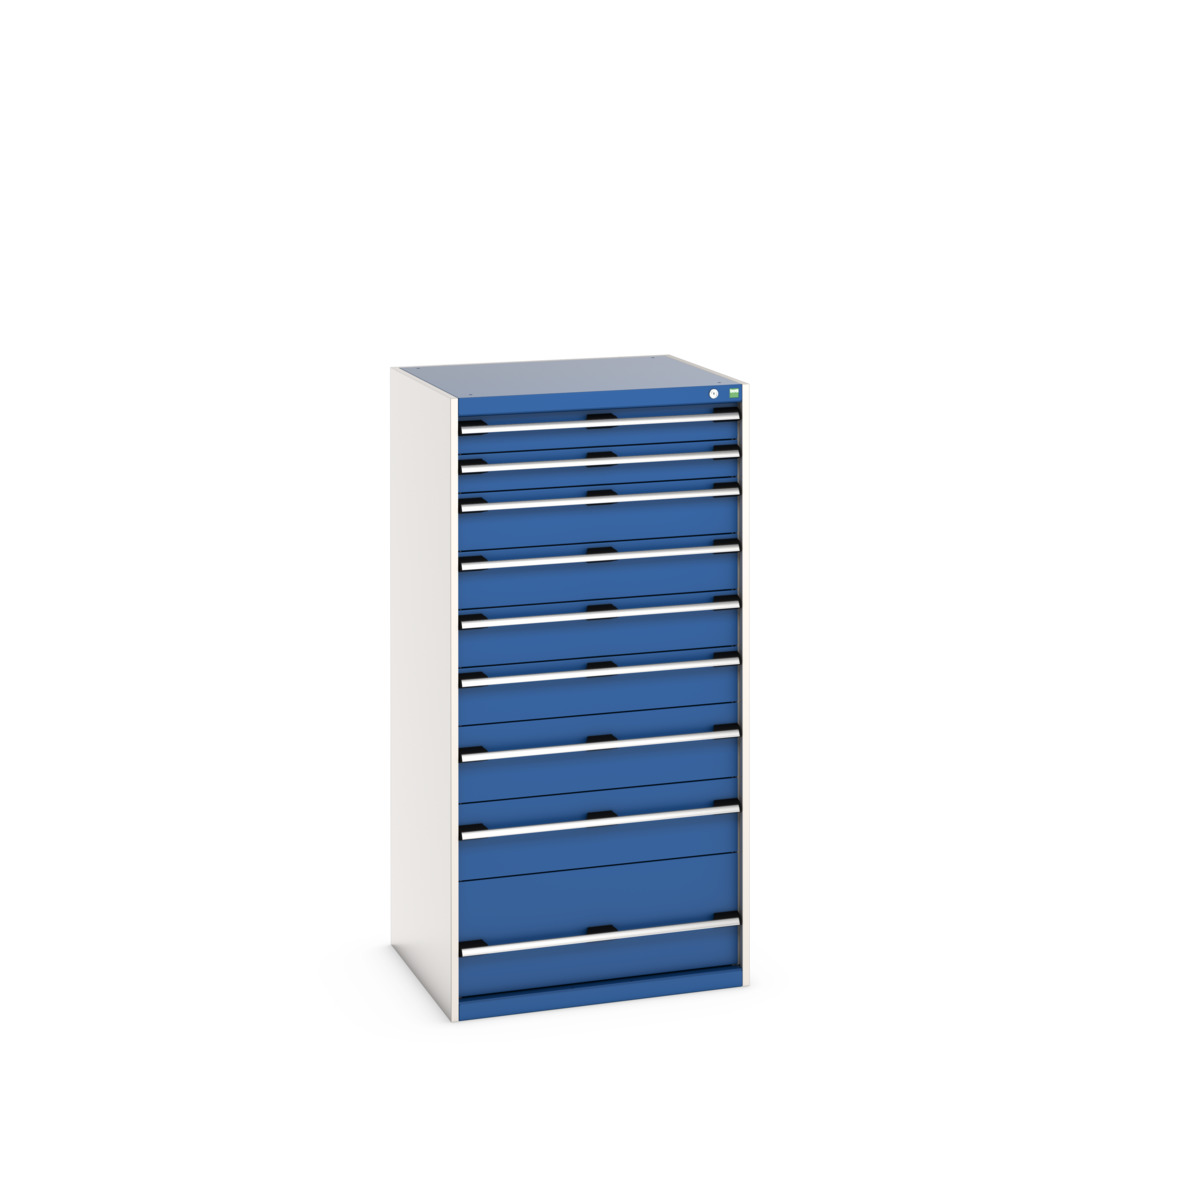 40028040.11V - cubio drawer cabinet